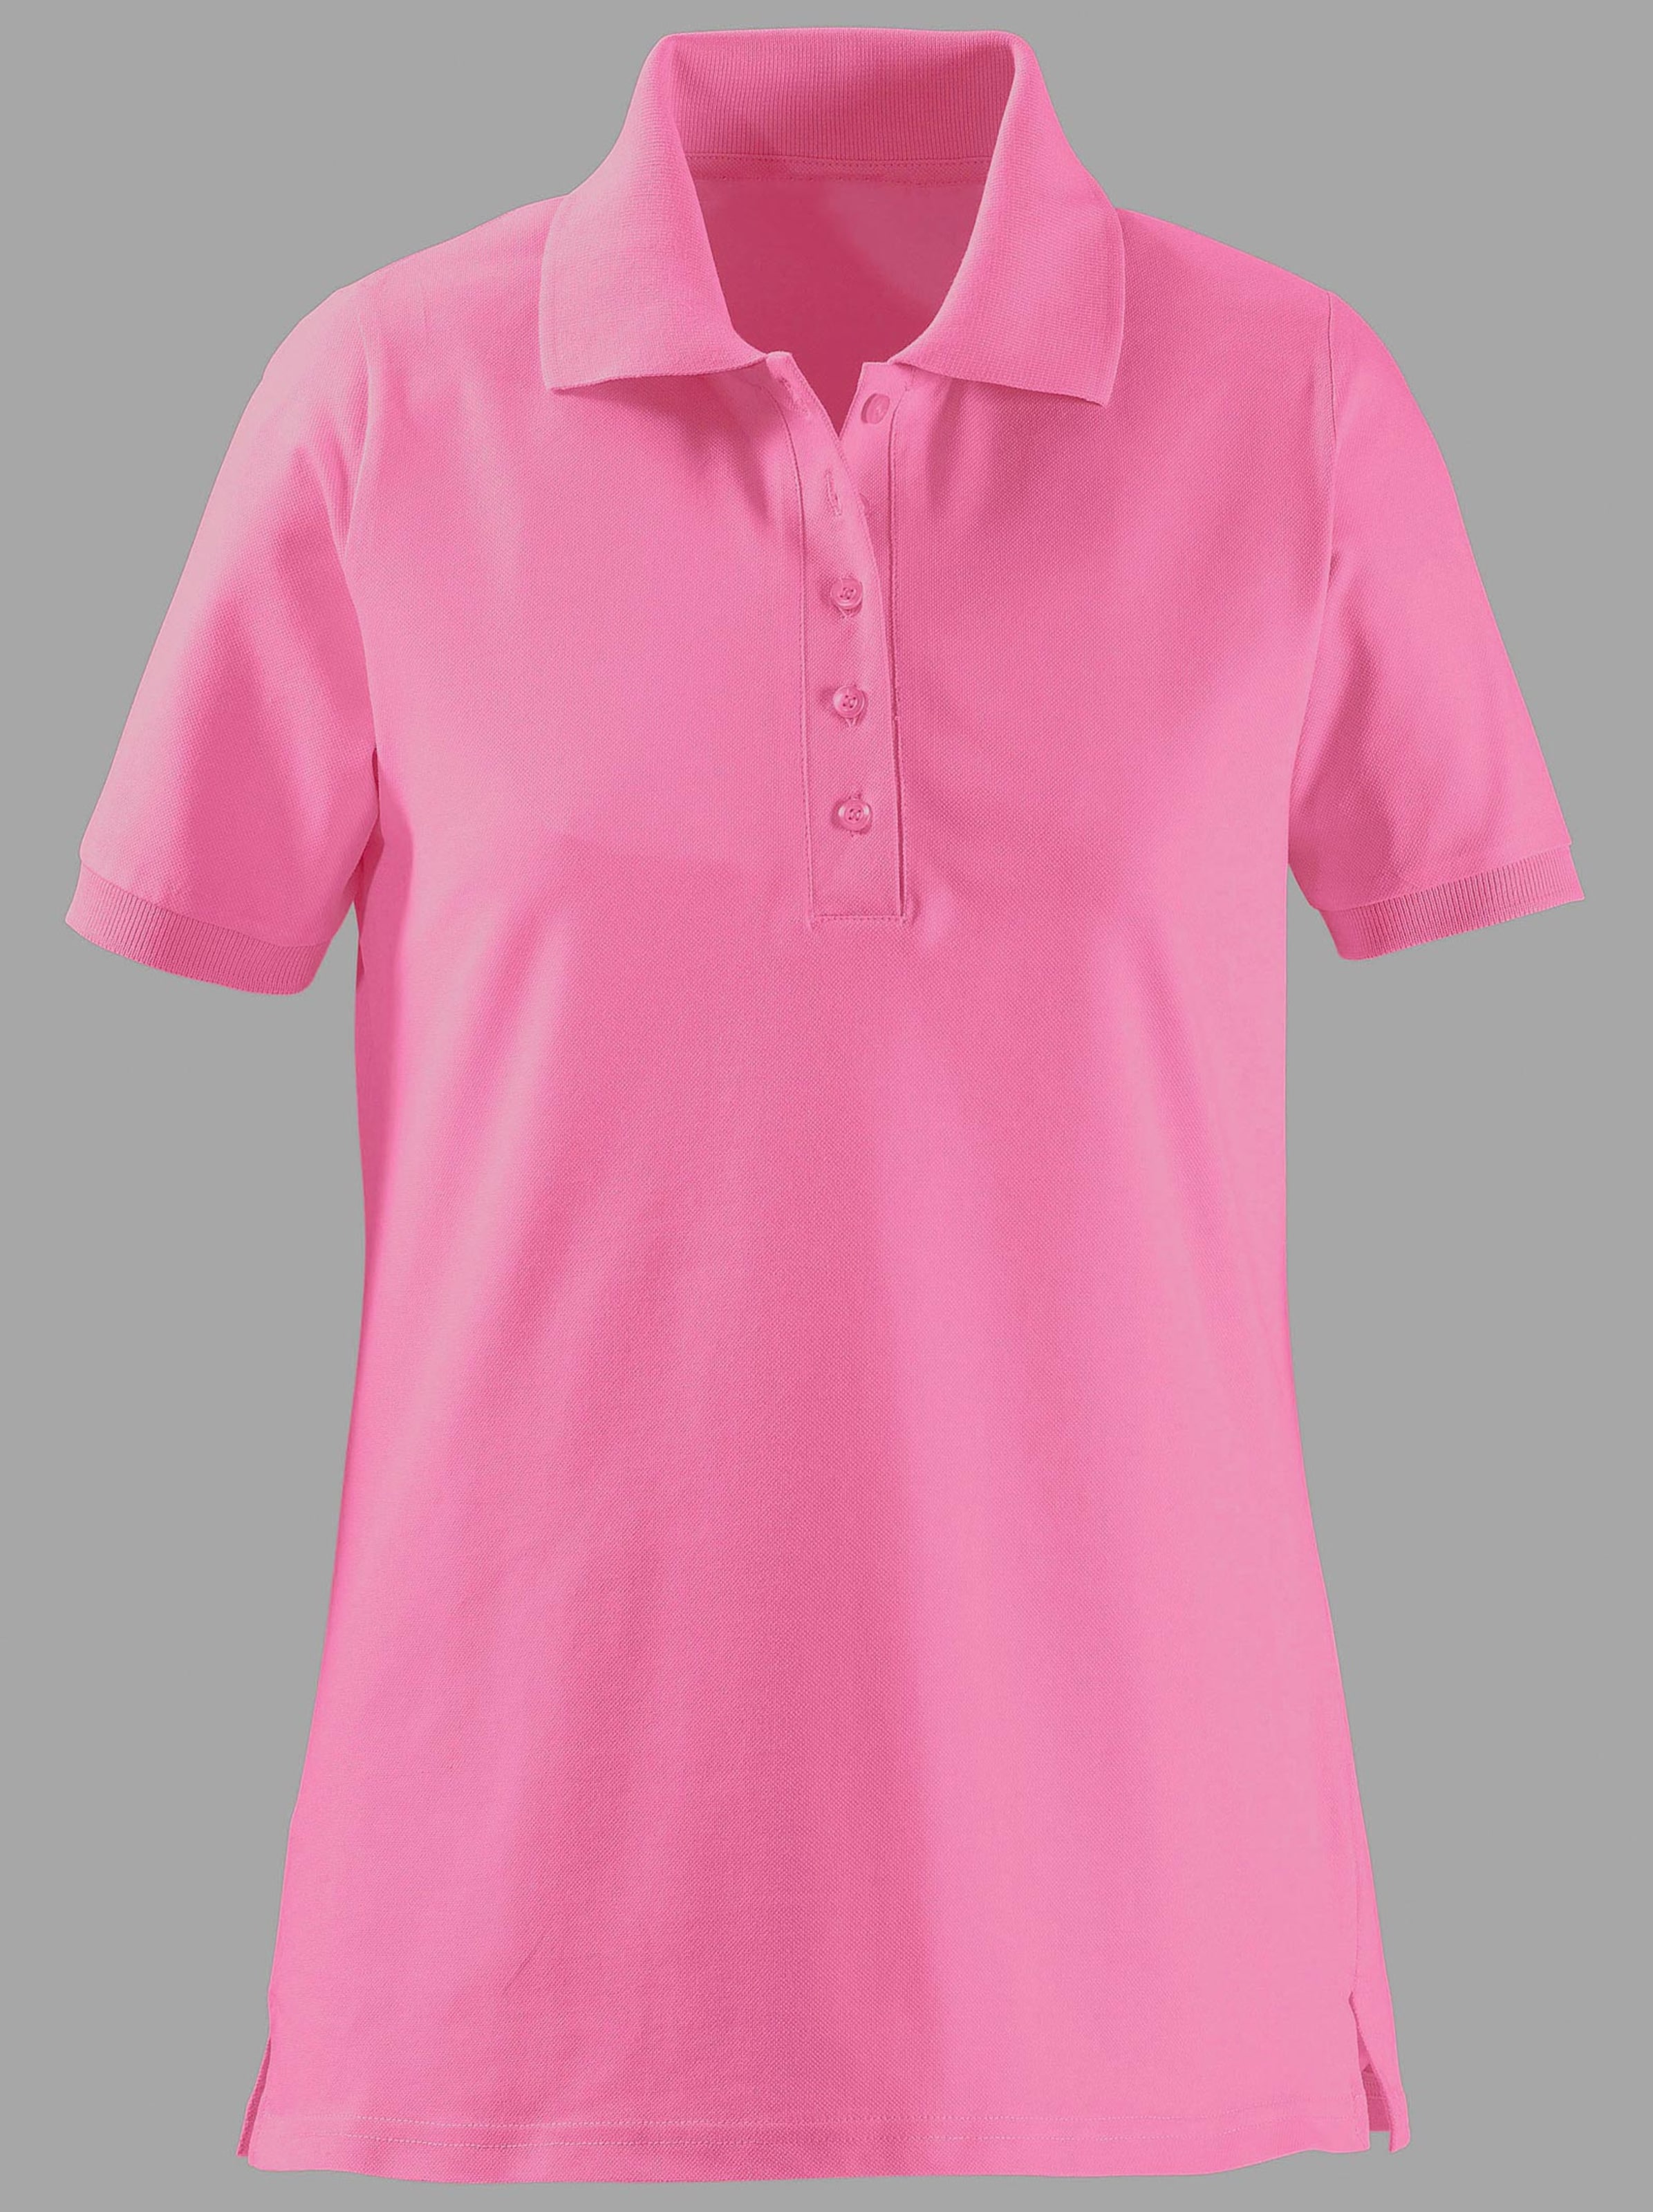 Damenmode Shirts Poloshirt in pink 